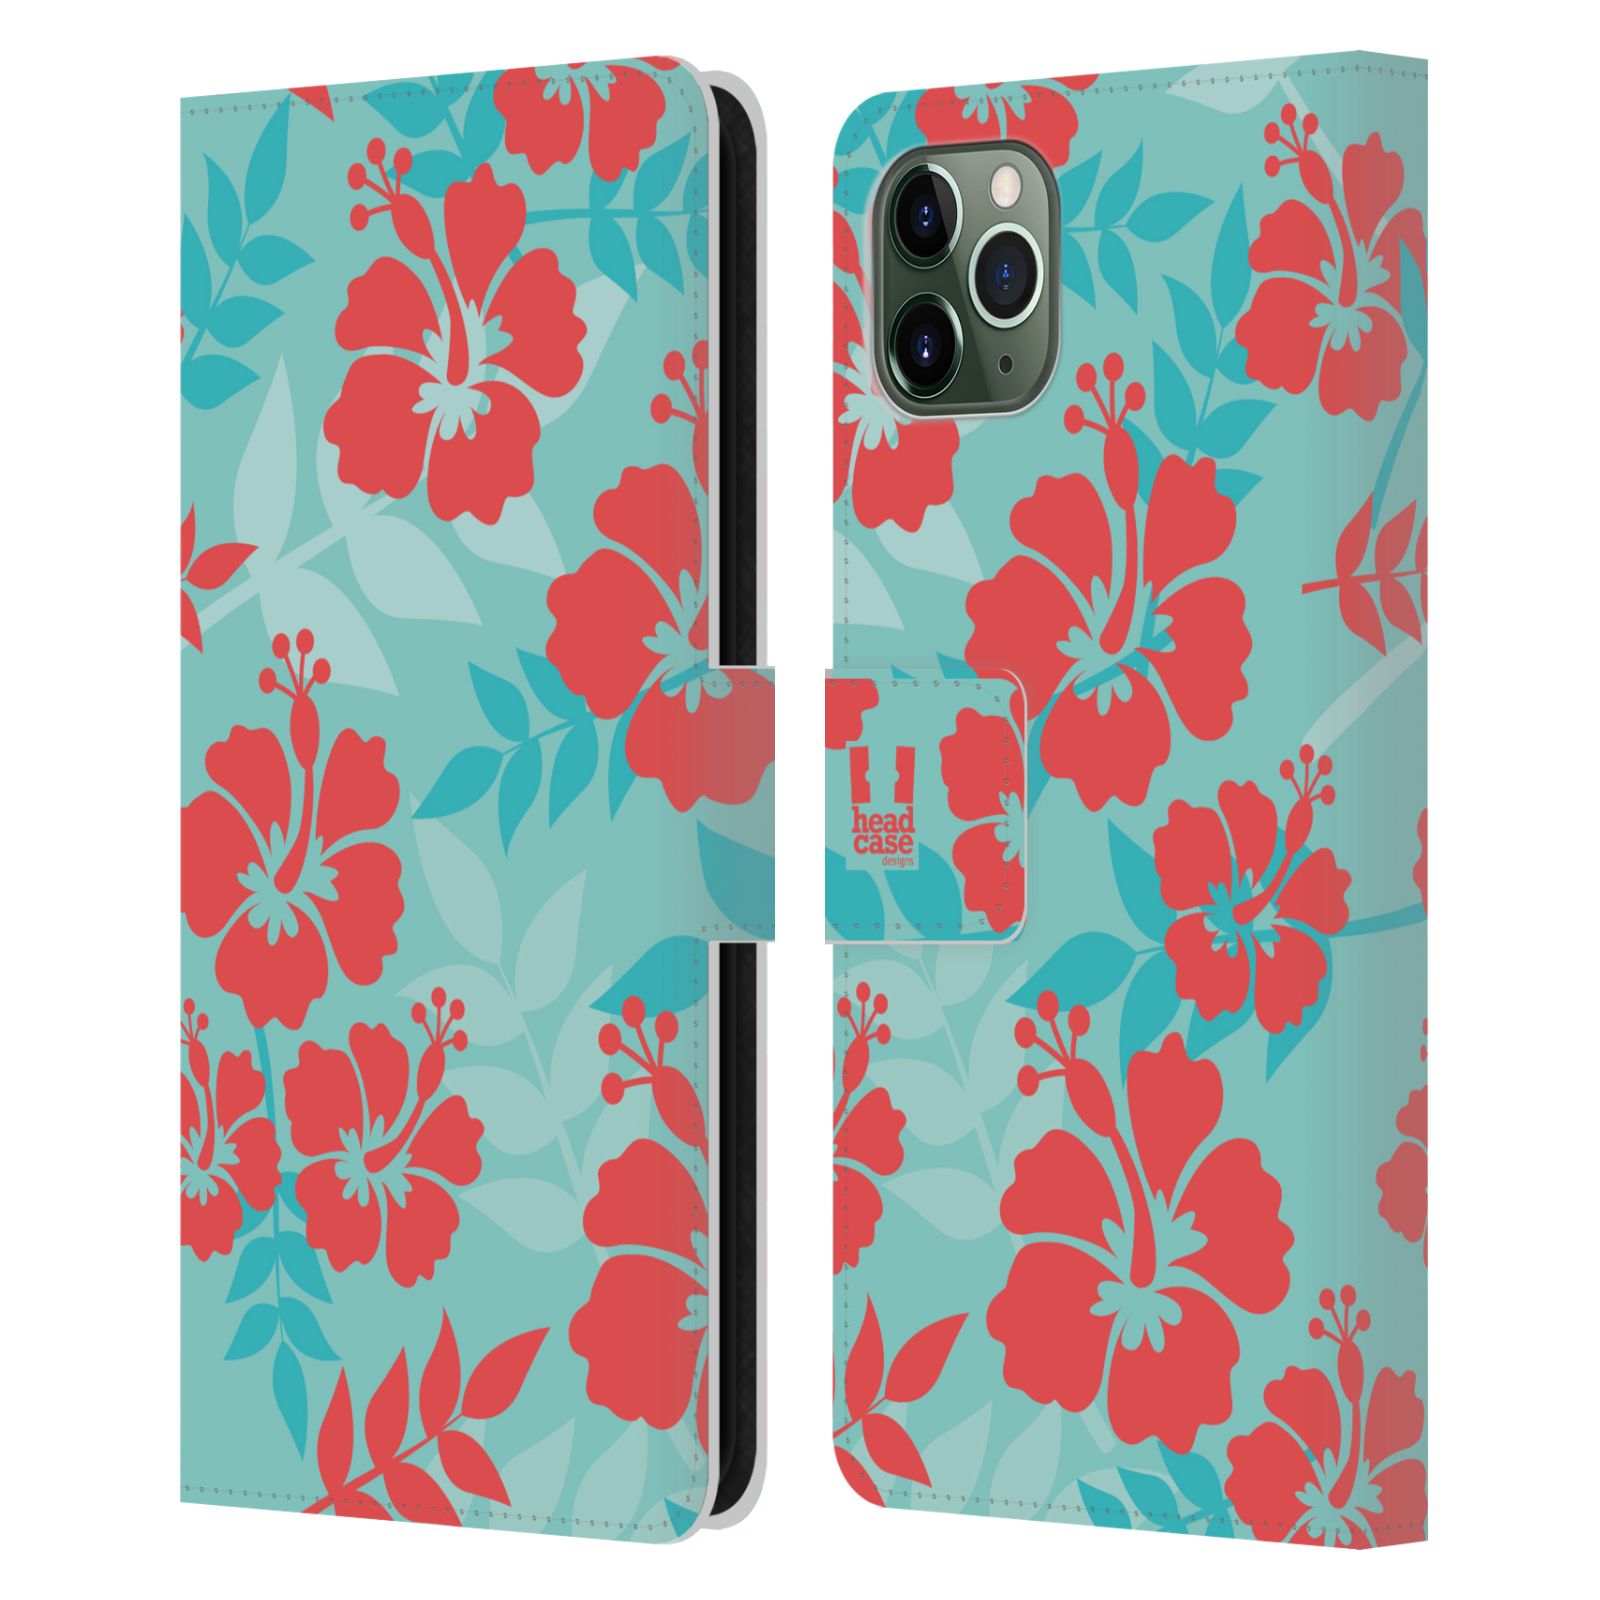 Pouzdro na mobil Apple Iphone 11 PRO MAX Havajský vzor Ibišek květ modrá a růžová